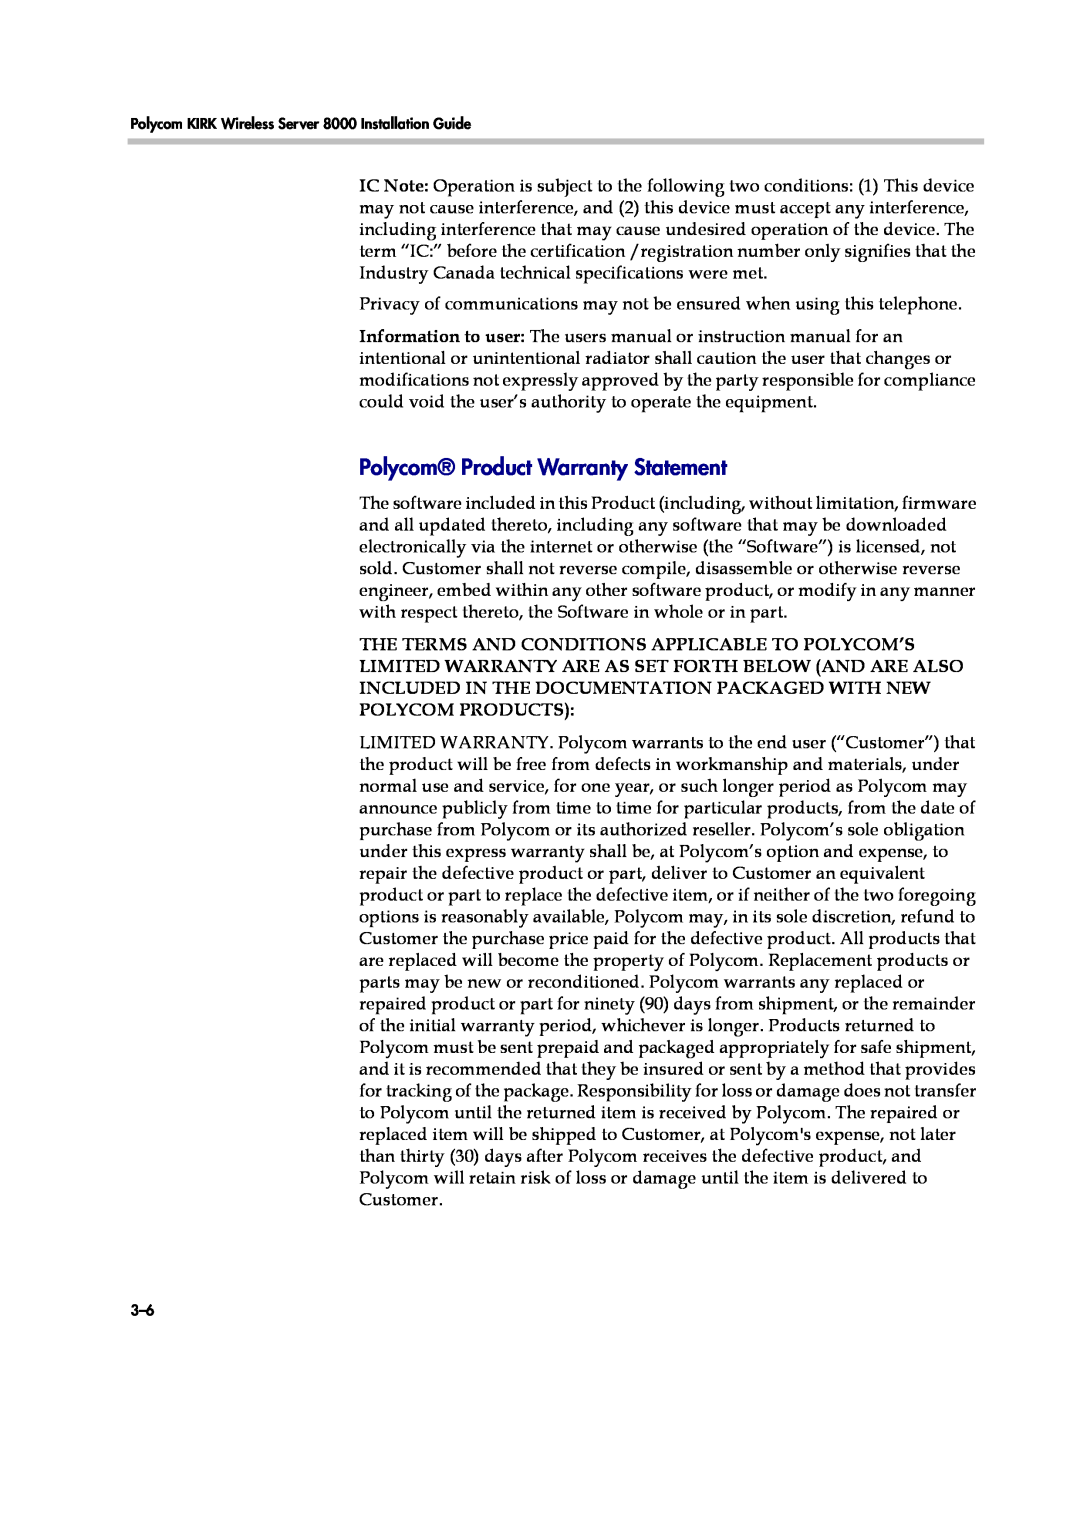 Polycom KWS8000 manual Polycom Product Warranty Statement 